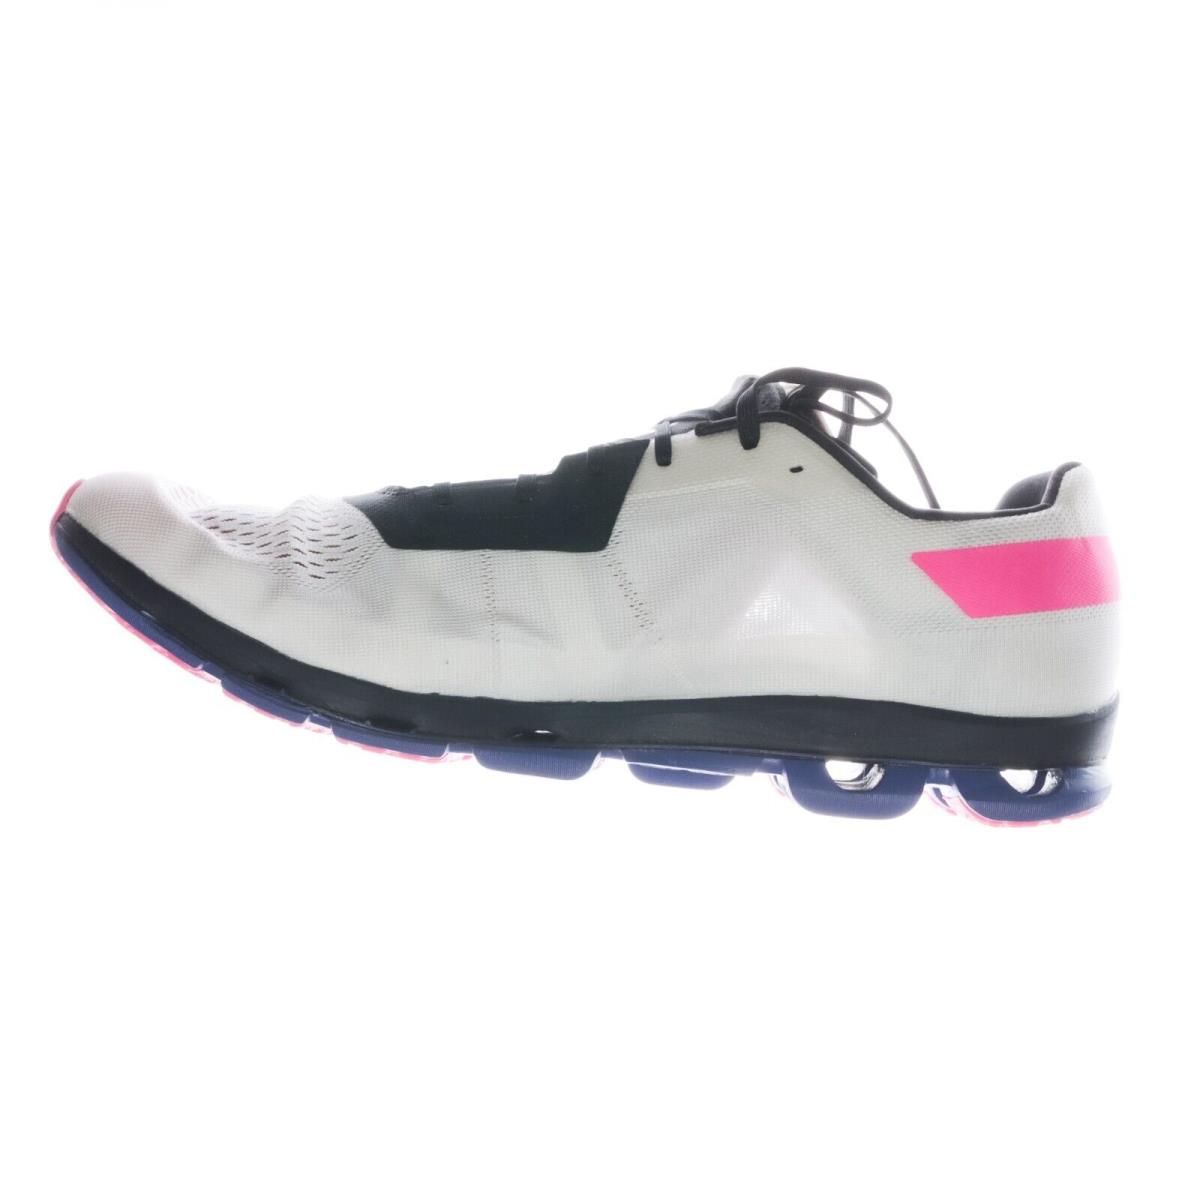 On-Running shoes Cloudflash - White, Indigo, Pink 0